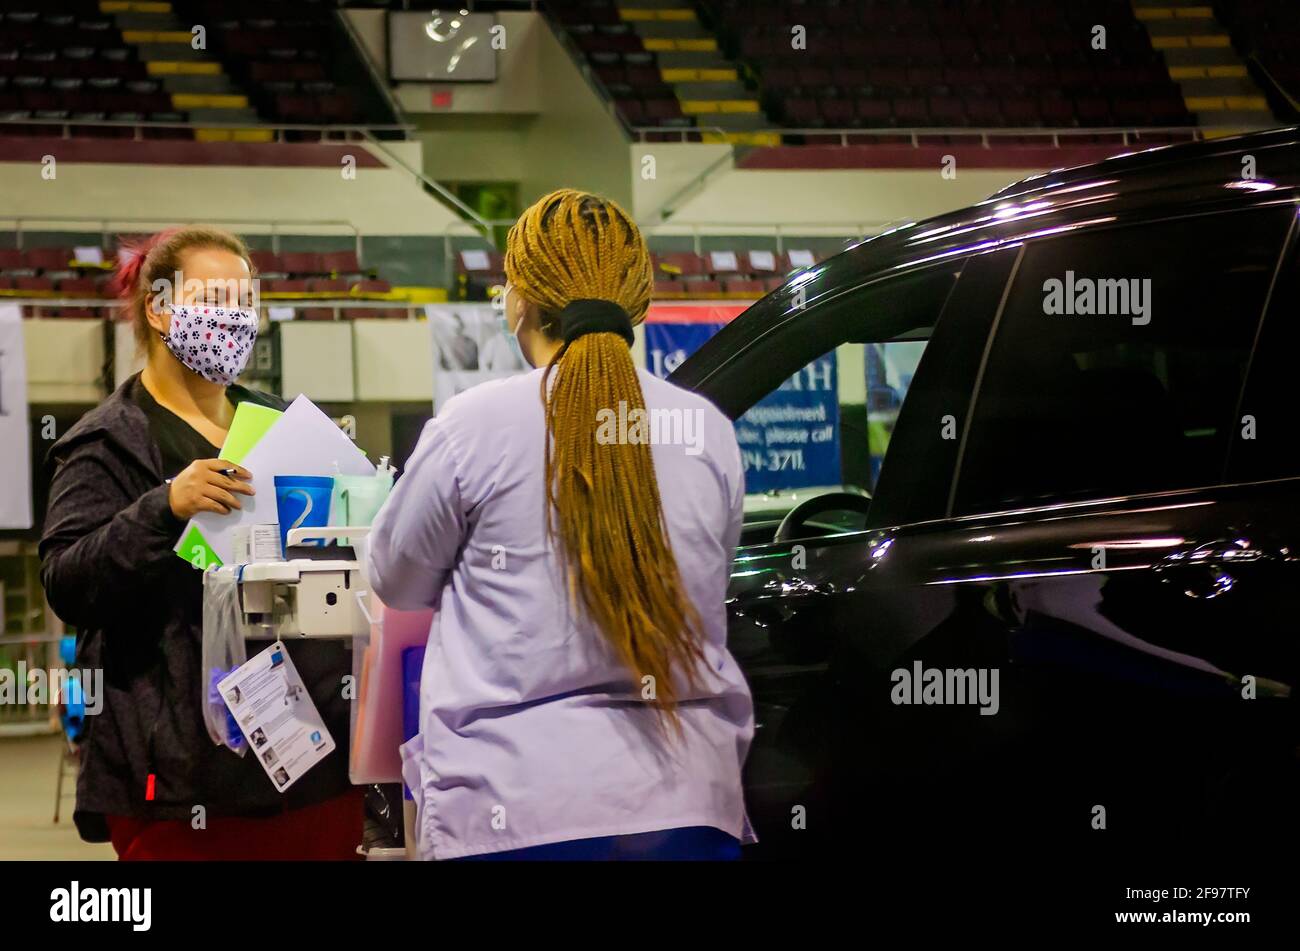 Les travailleurs de la santé des États-Unis se préparent à administrer le vaccin COVID-19 à un conducteur au site de vaccination COVID-19 de l'hôpital, au drive-in de Mobile, en Alabama. Banque D'Images